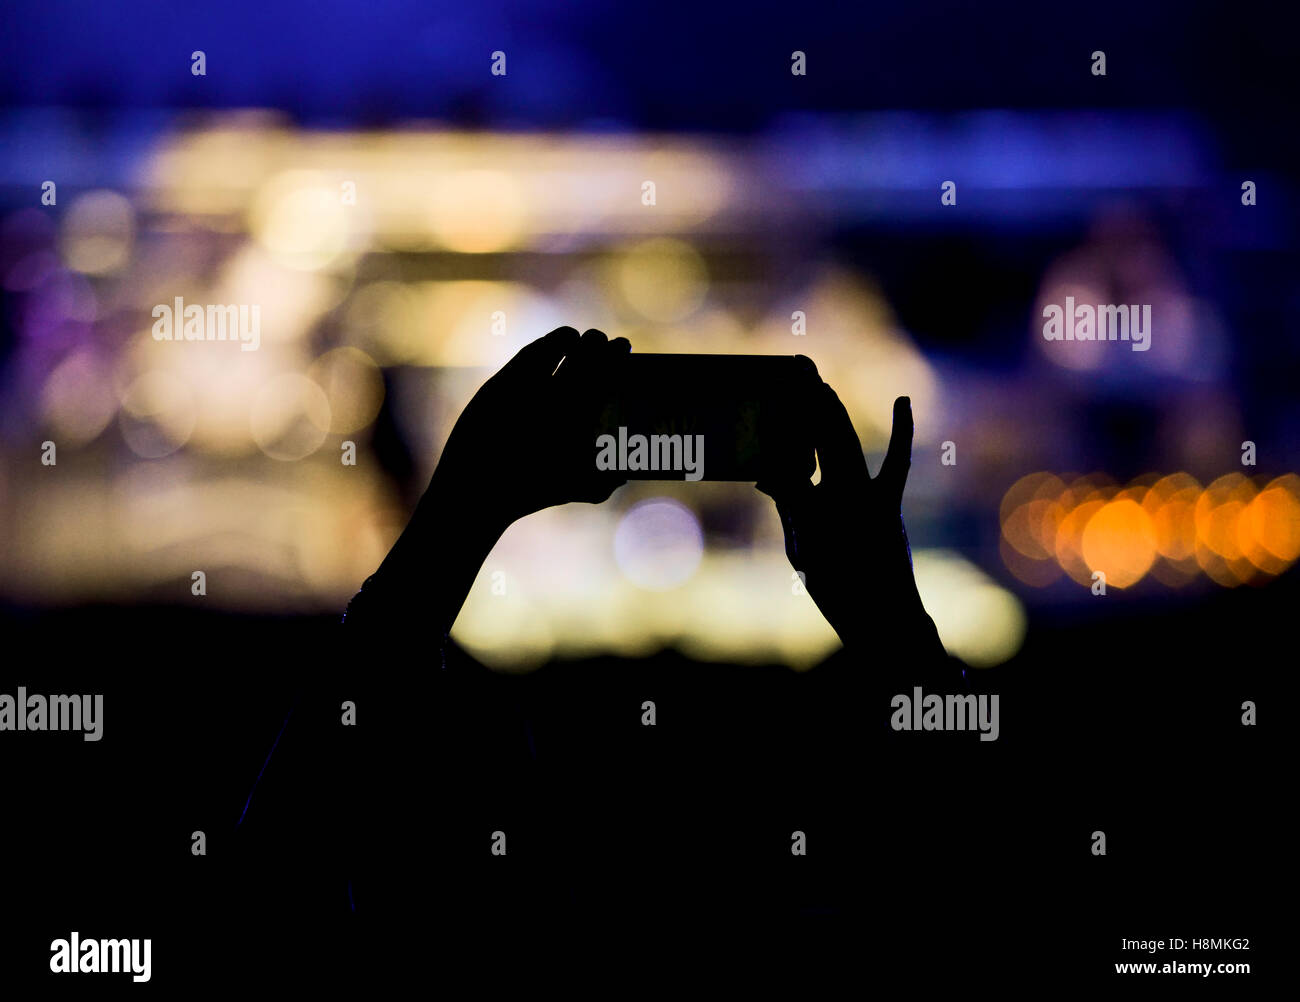 Scène de concert avec la silhouette du mains soulevées holding camera phone Banque D'Images